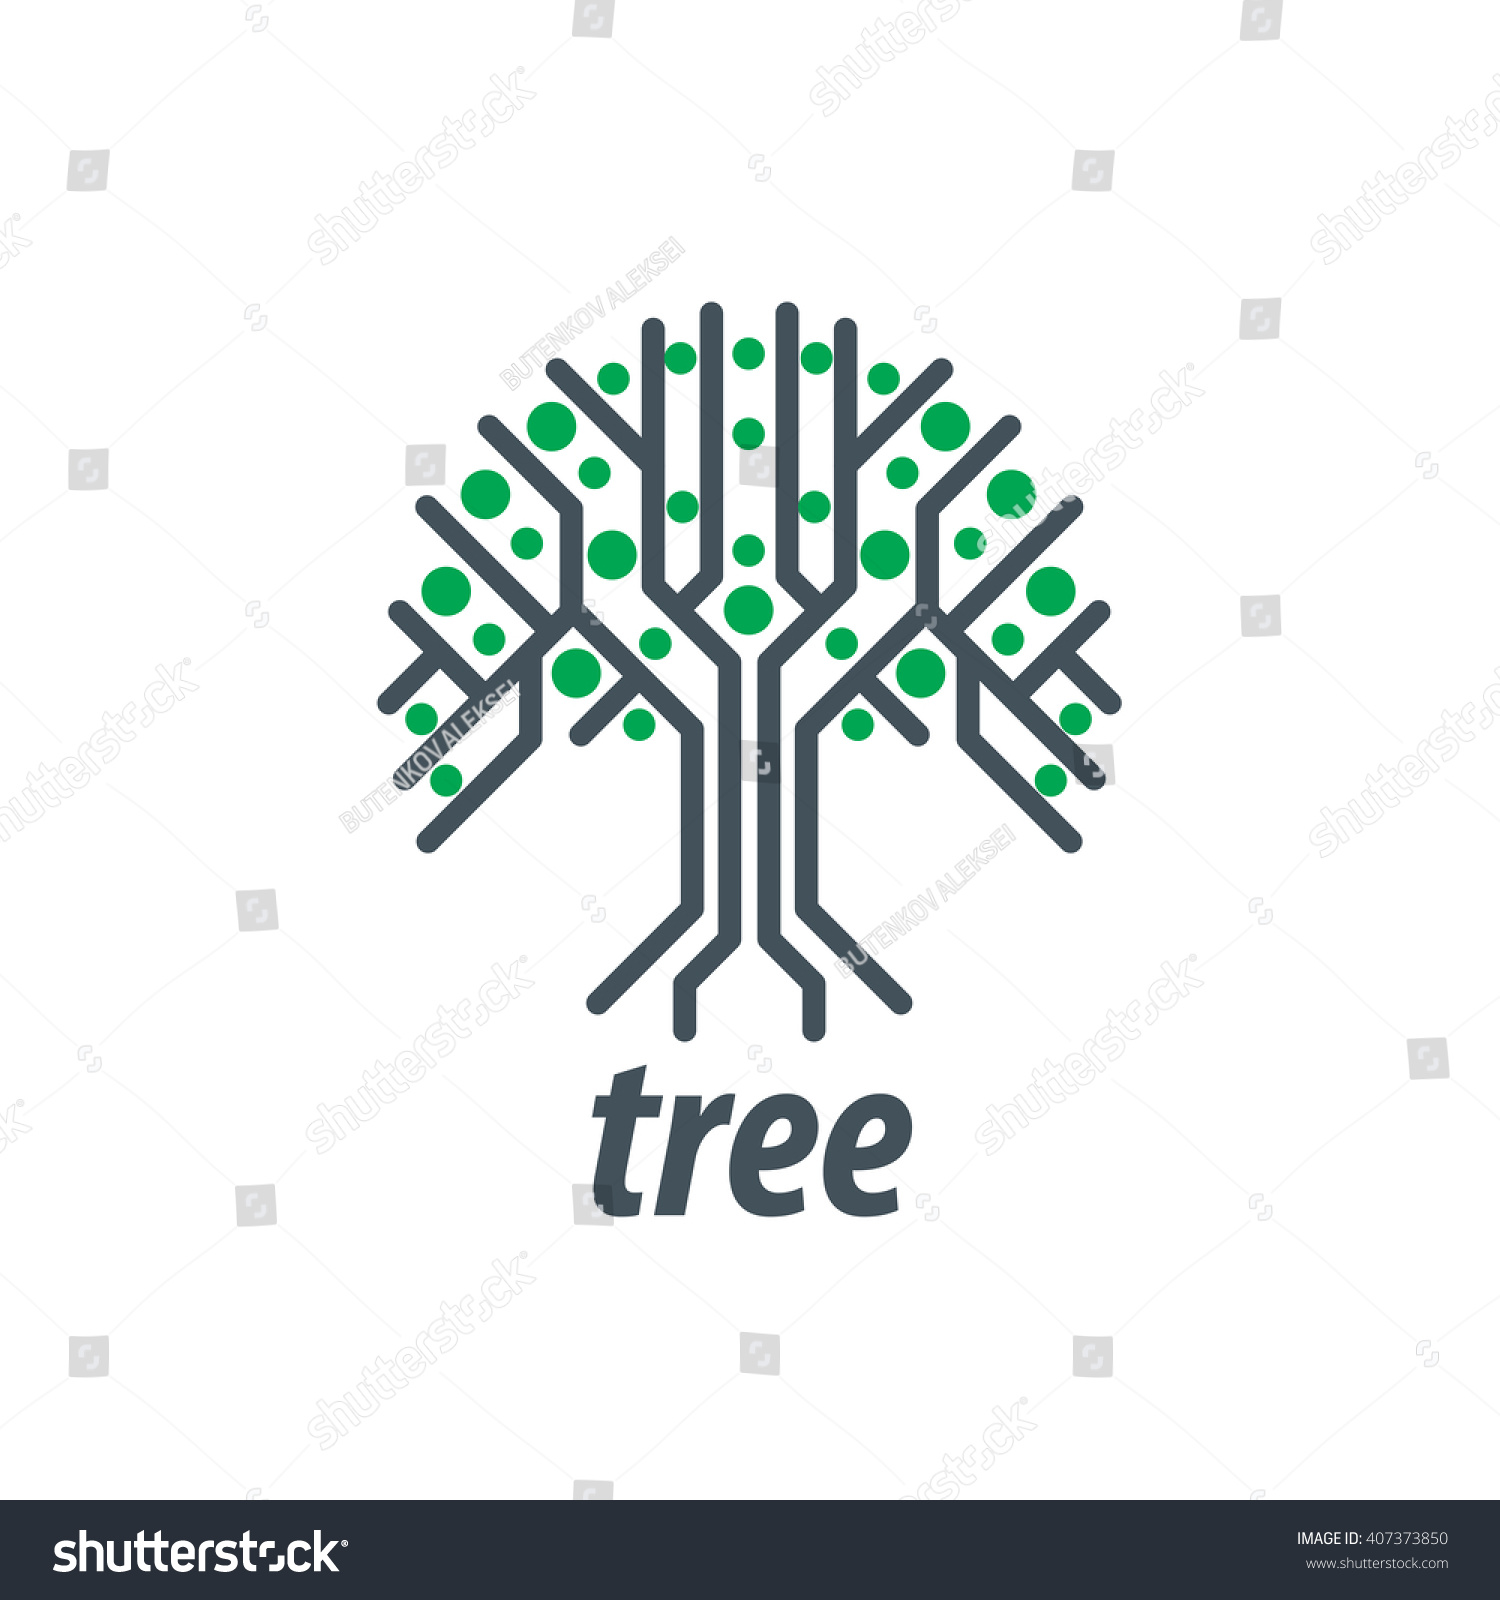 Vector Logo Tree - 407373850 : Shutterstock